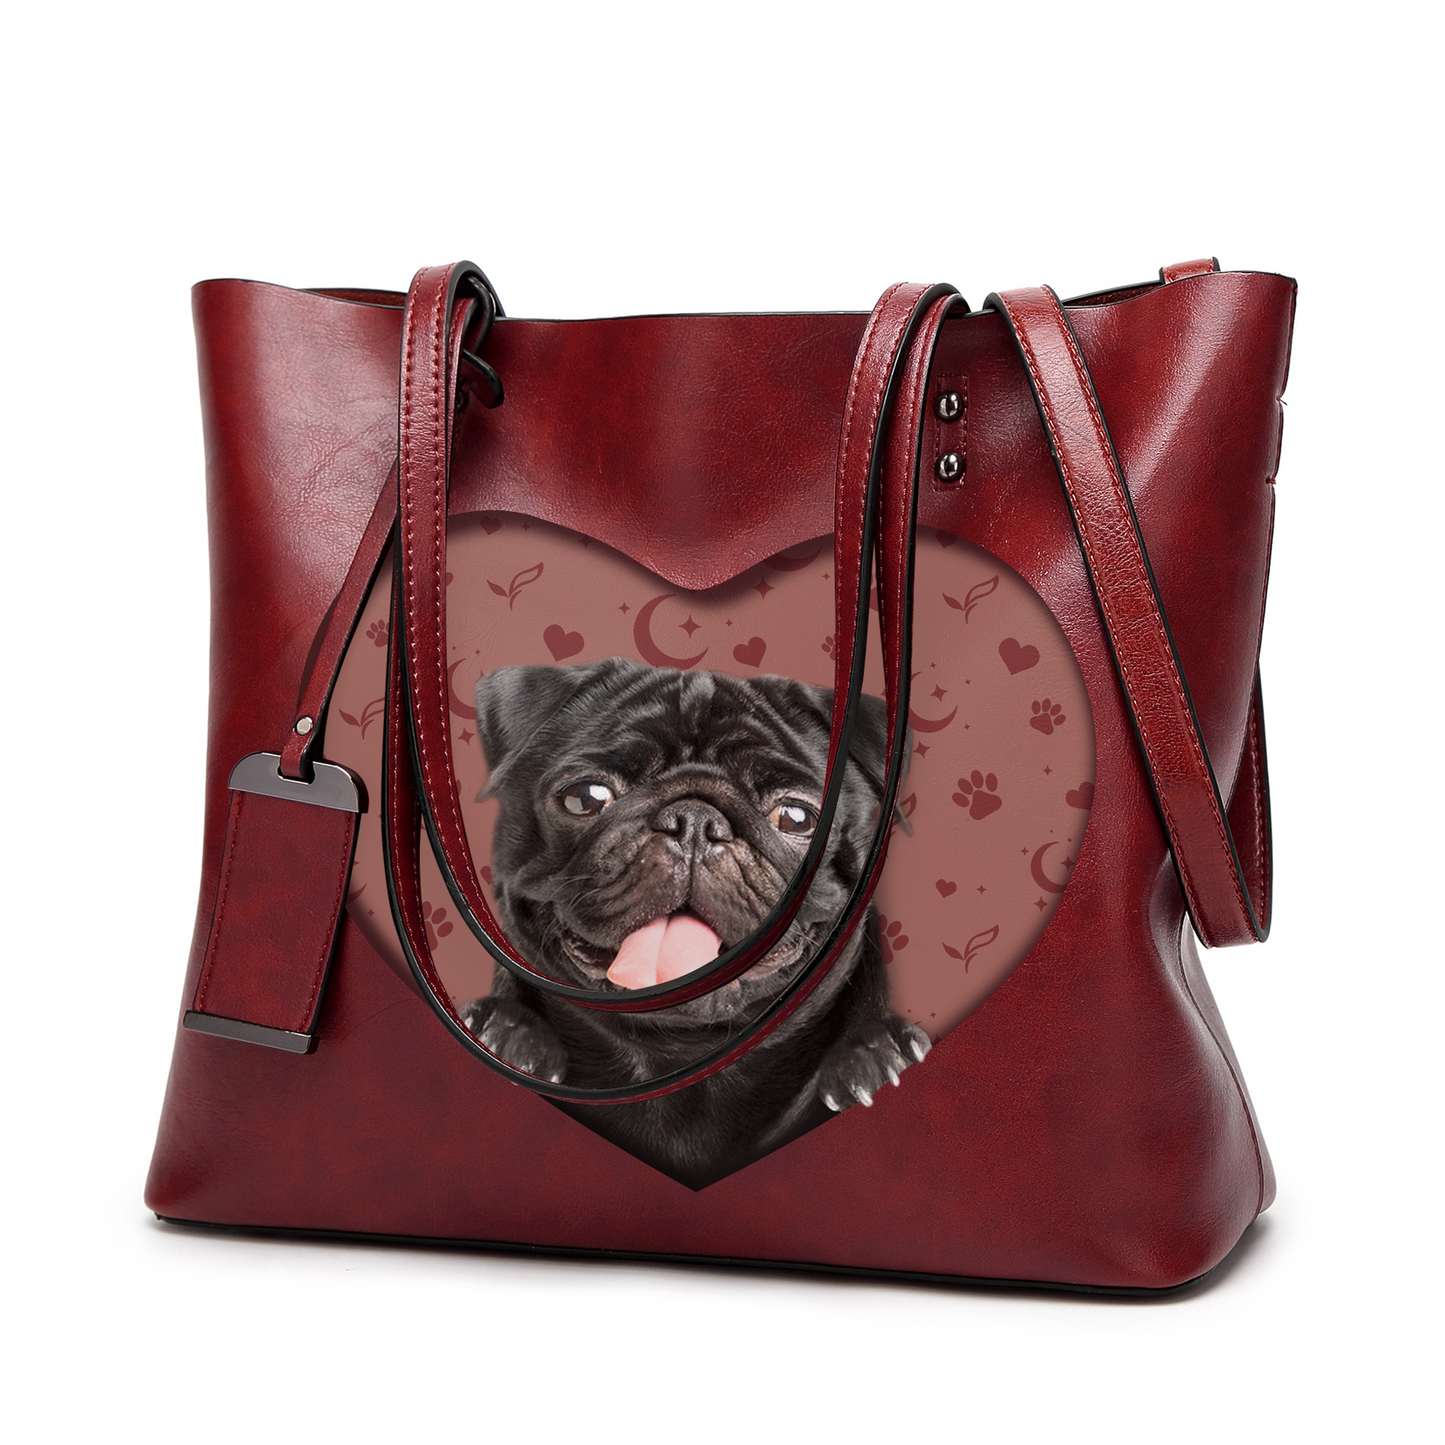 I Know I'm Cute - Pug Glamour Handbag V2 - 7